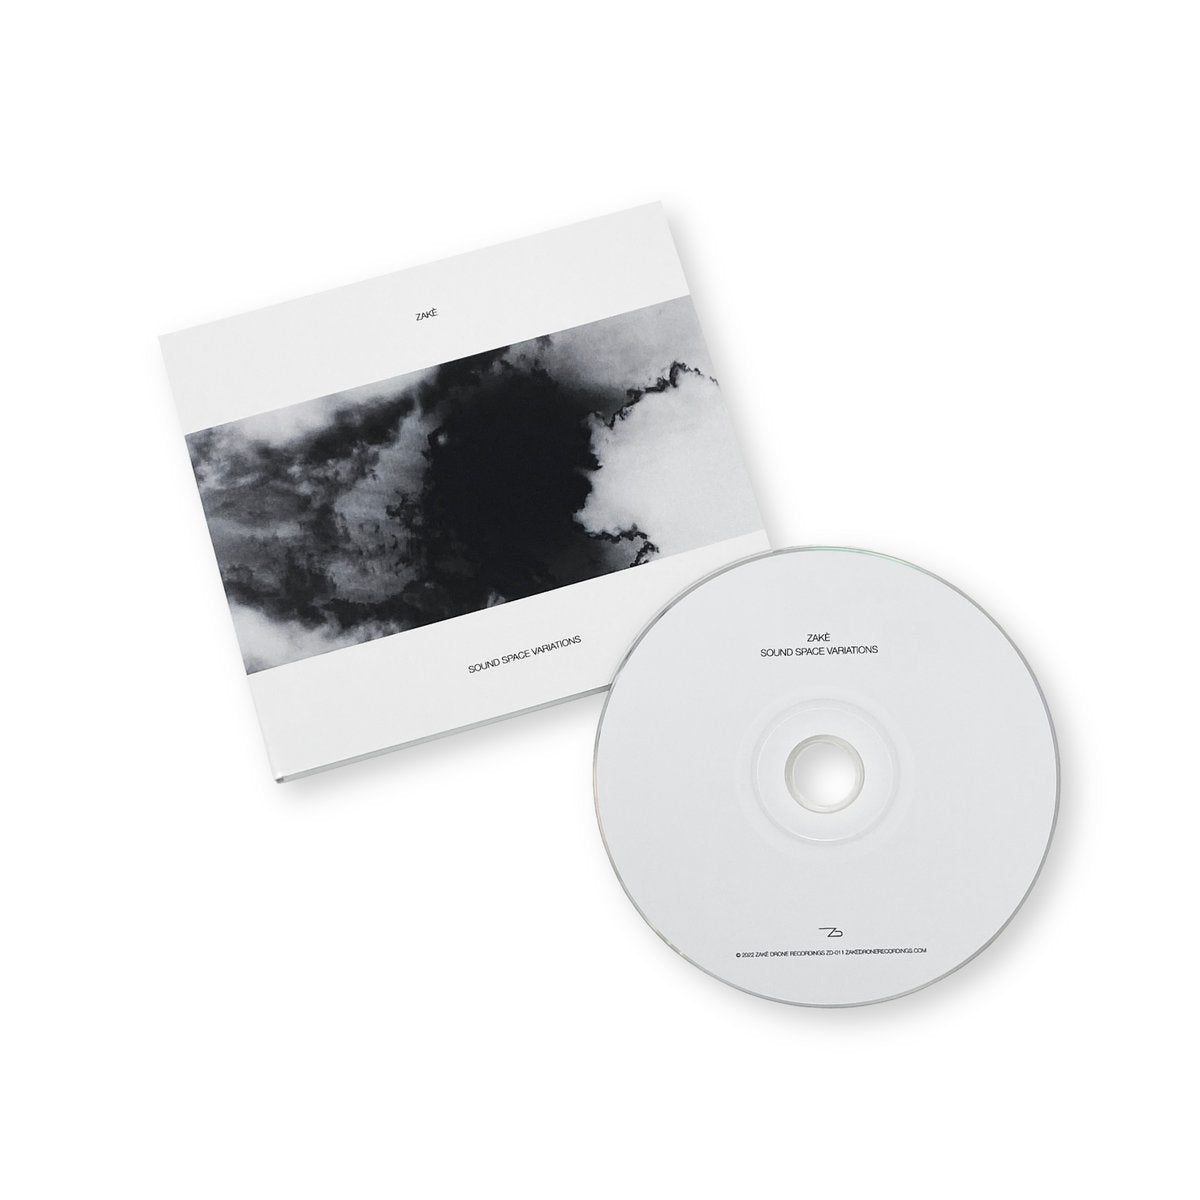 zakè 'Sound Space Variations' [CD]